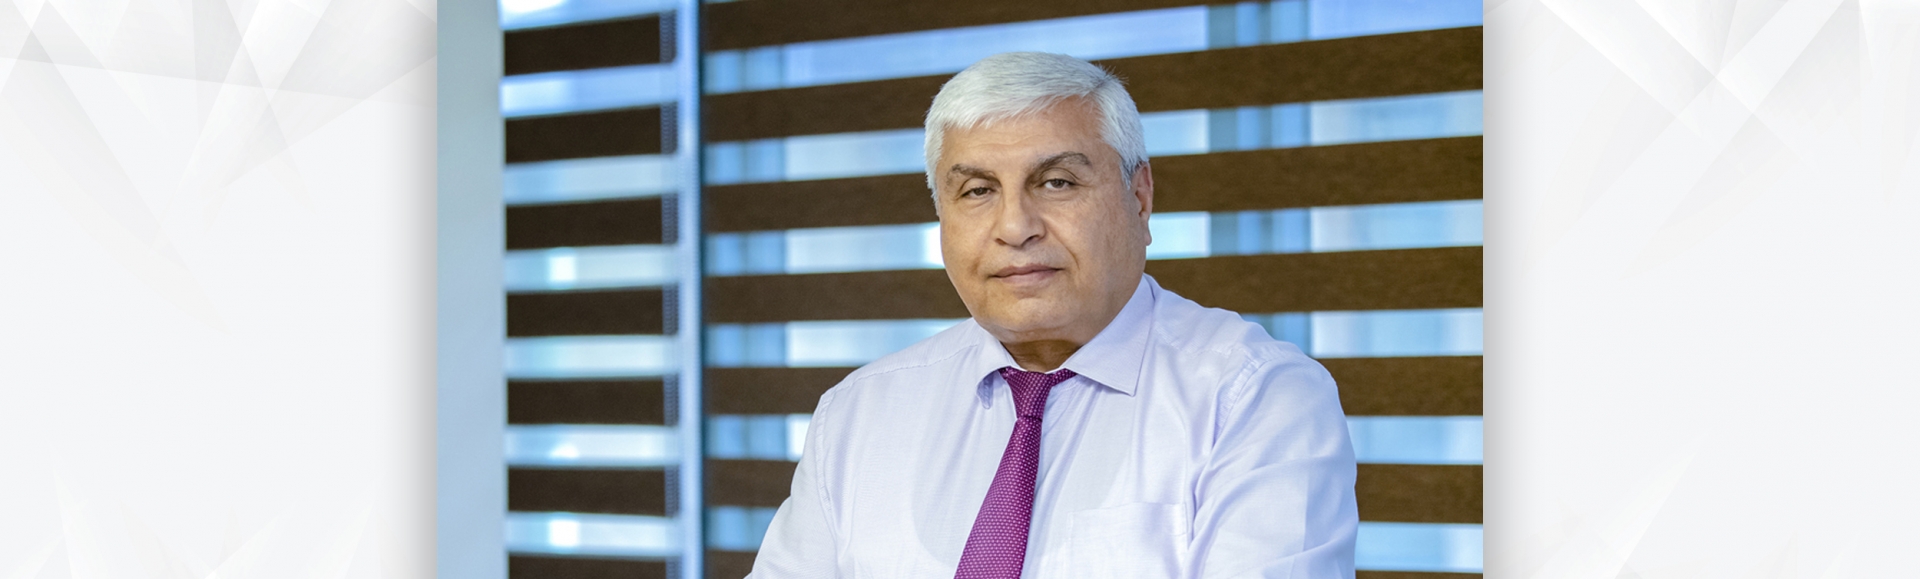 Հայաստանի բանկերի միության խորհրդի նախագահ է ընտրվել Գևորգ Մաչանյանը